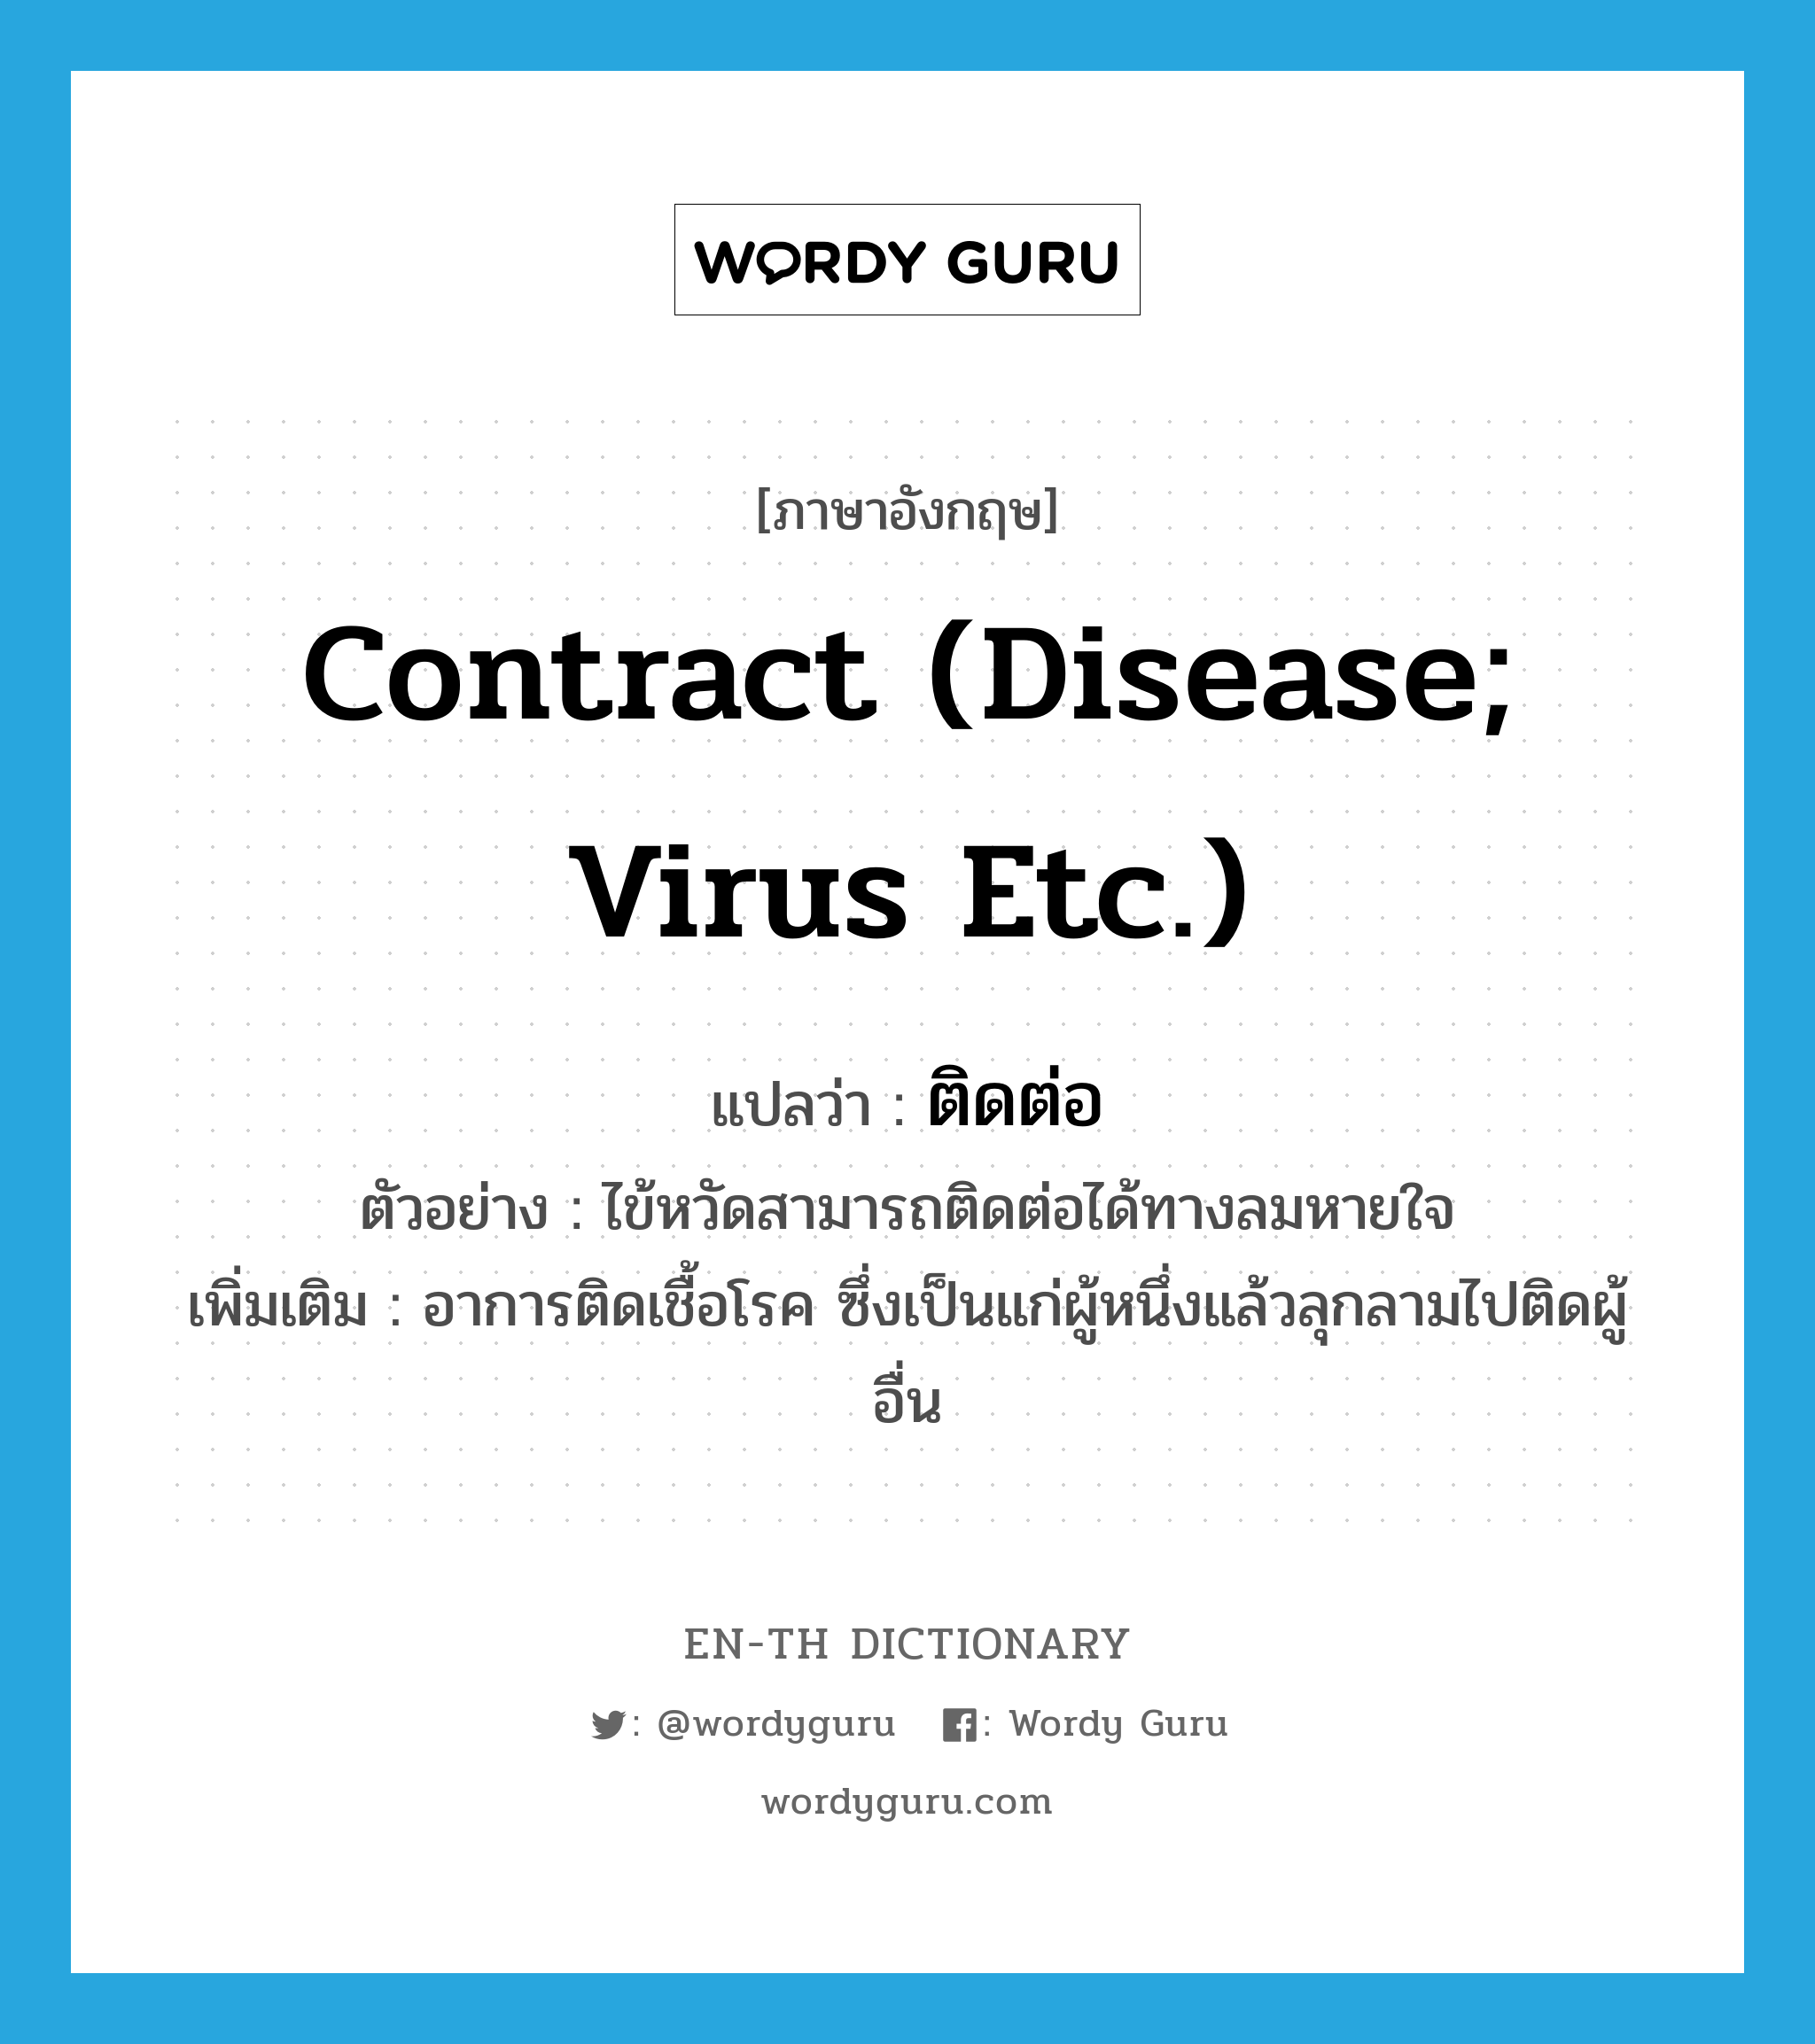 contract (disease; virus etc.) แปลว่า?, คำศัพท์ภาษาอังกฤษ contract (disease; virus etc.) แปลว่า ติดต่อ ประเภท V ตัวอย่าง ไข้หวัดสามารถติดต่อได้ทางลมหายใจ เพิ่มเติม อาการติดเชื้อโรค ซึ่งเป็นแก่ผู้หนึ่งแล้วลุกลามไปติดผู้อื่น หมวด V